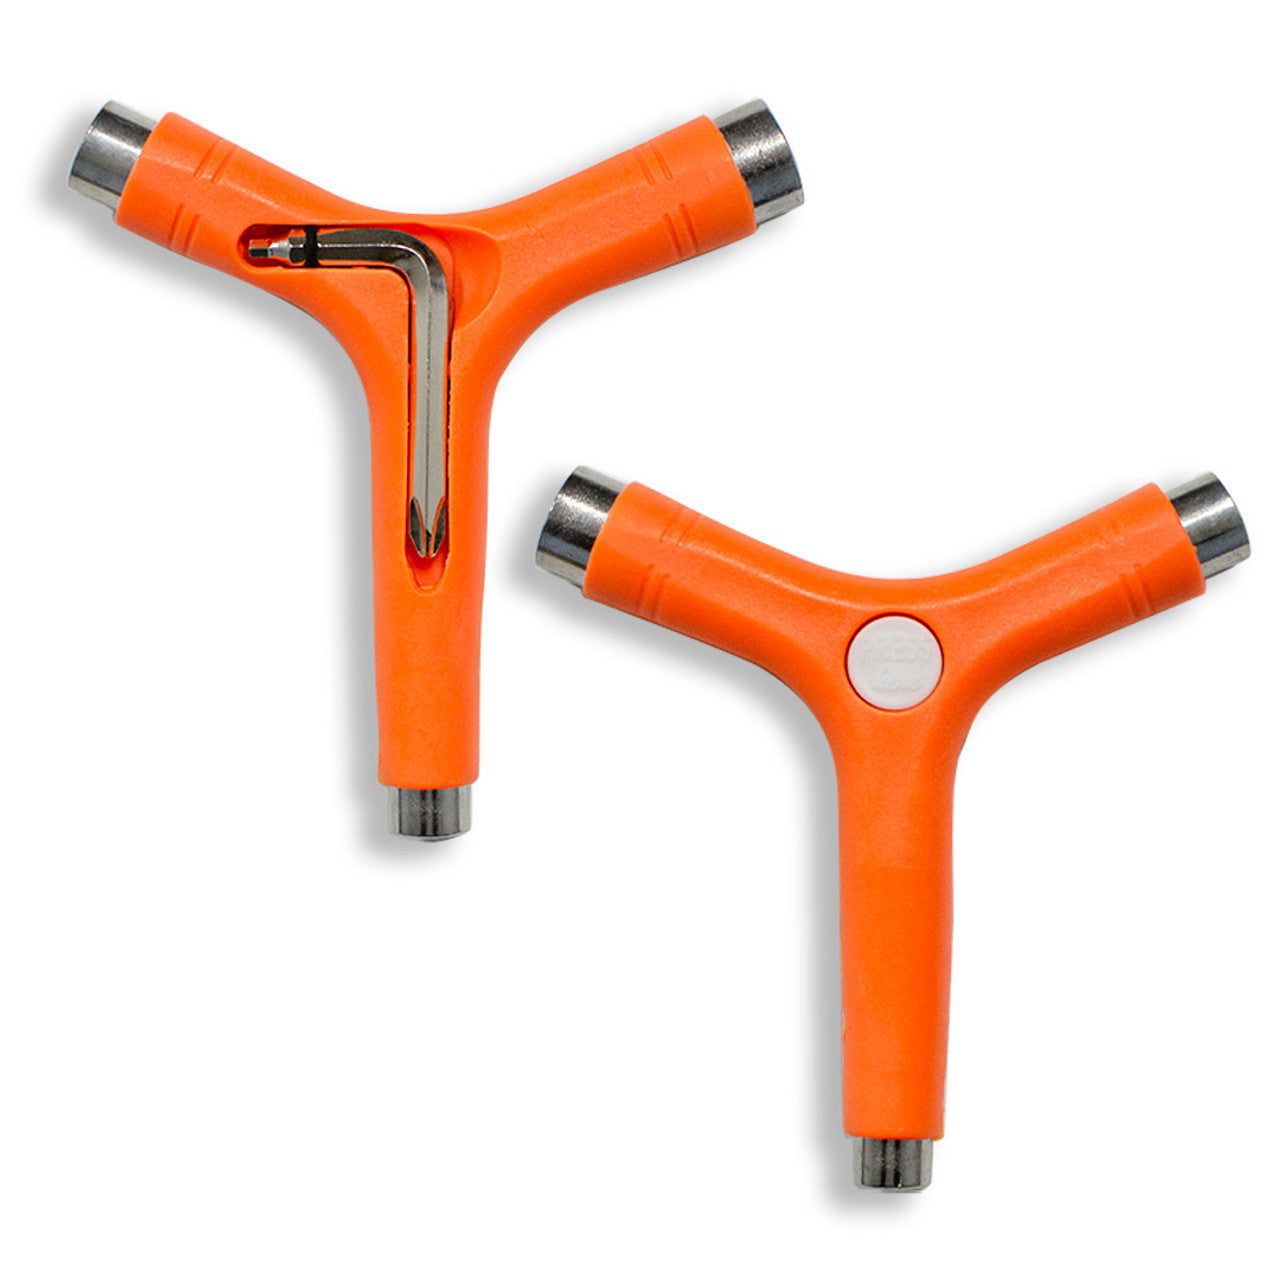 Y-Shaped Skate Tool - Orange